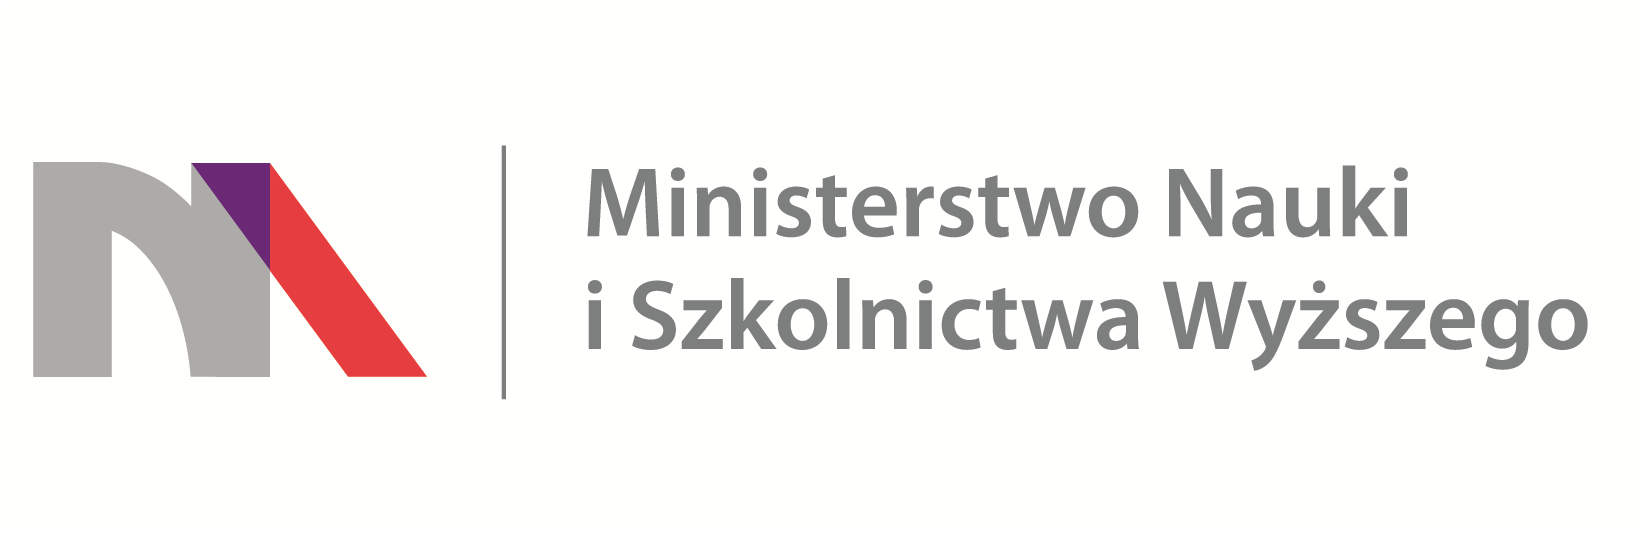 ministerstwo-nauki-i-szkolnictwa-wyzszego-logo.png